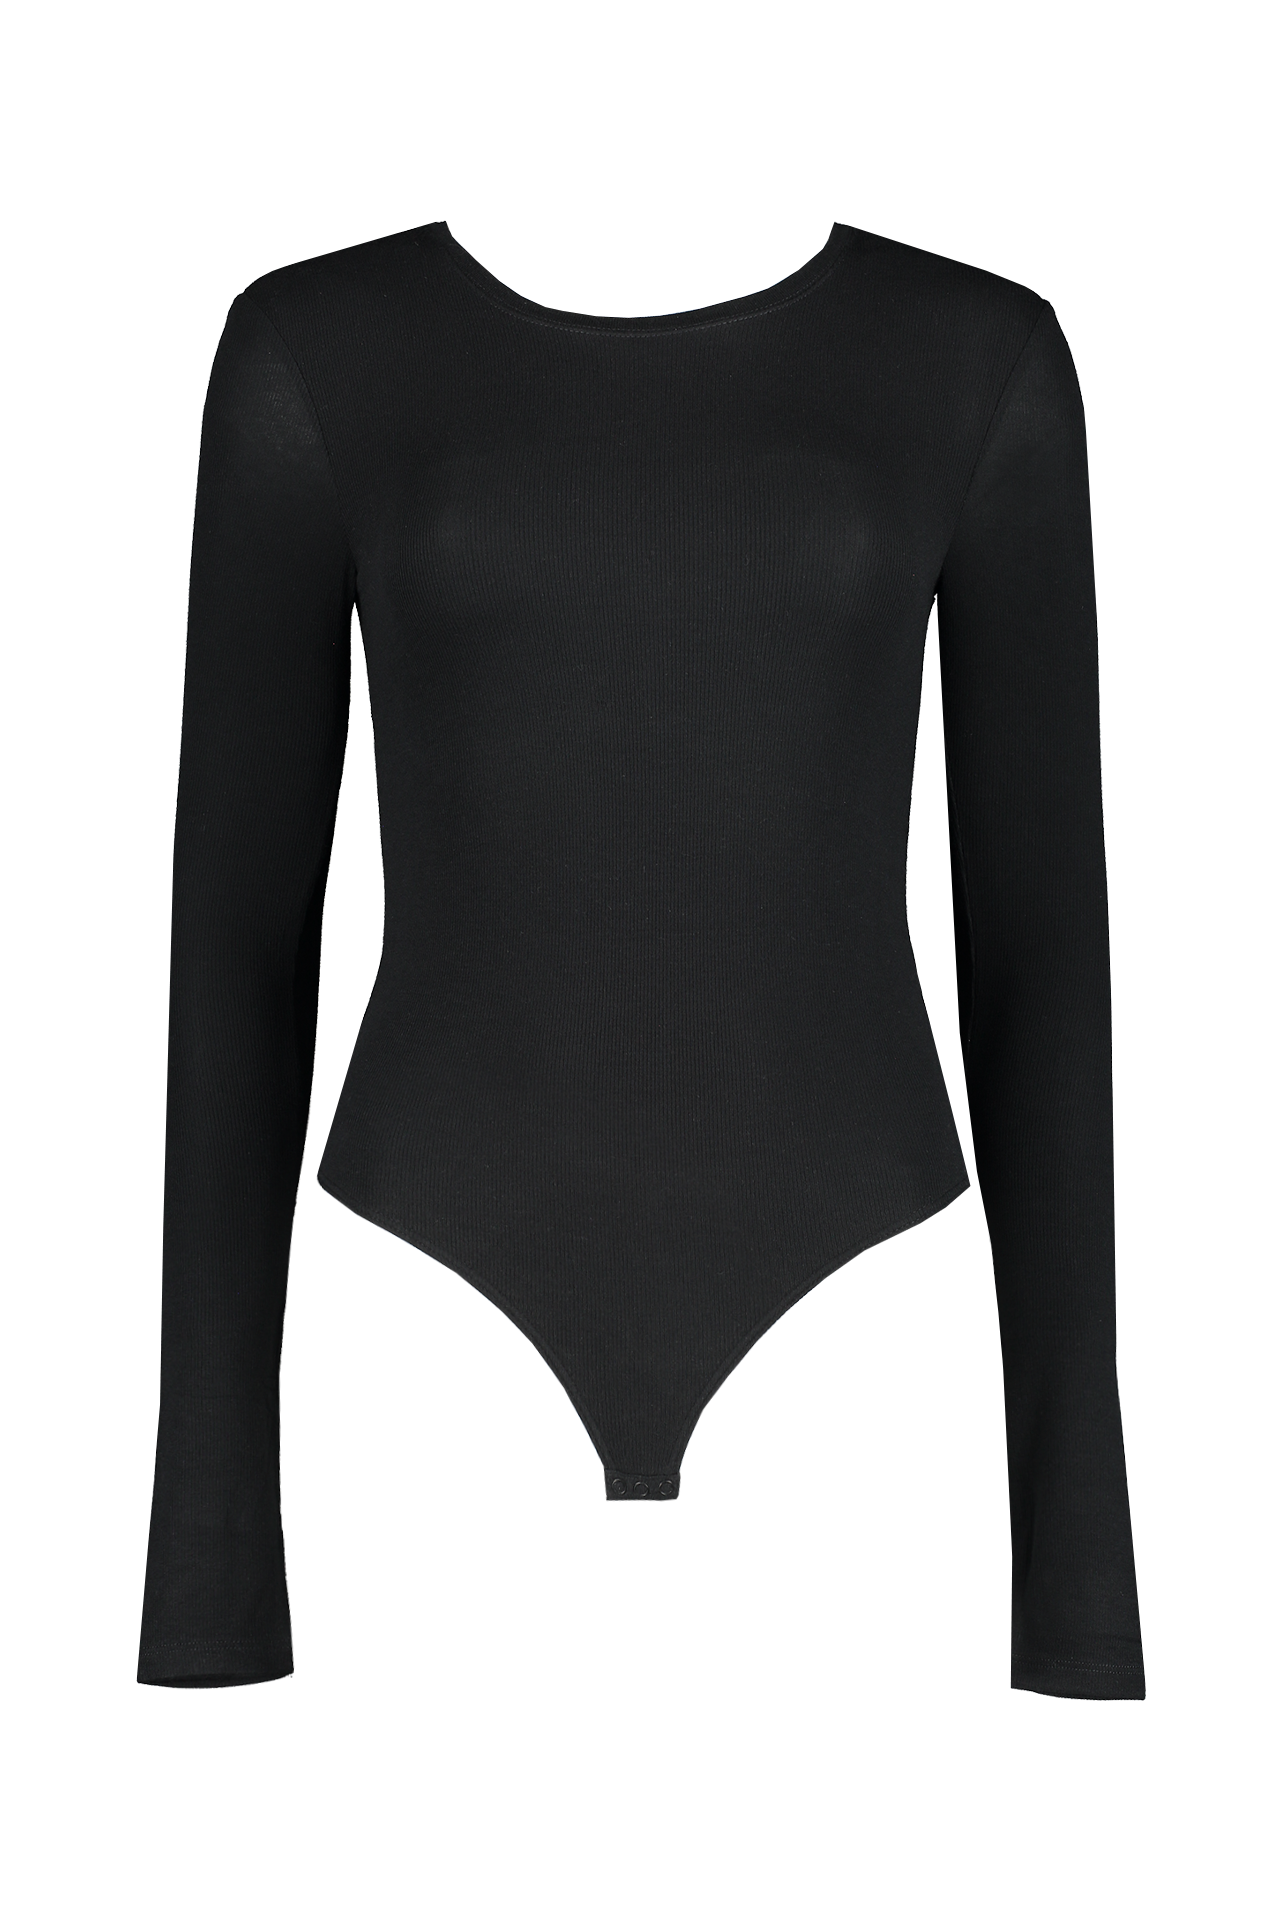 Anita Women's 3528 Corselet Shaping Bodysuit, Black, Size: 34E